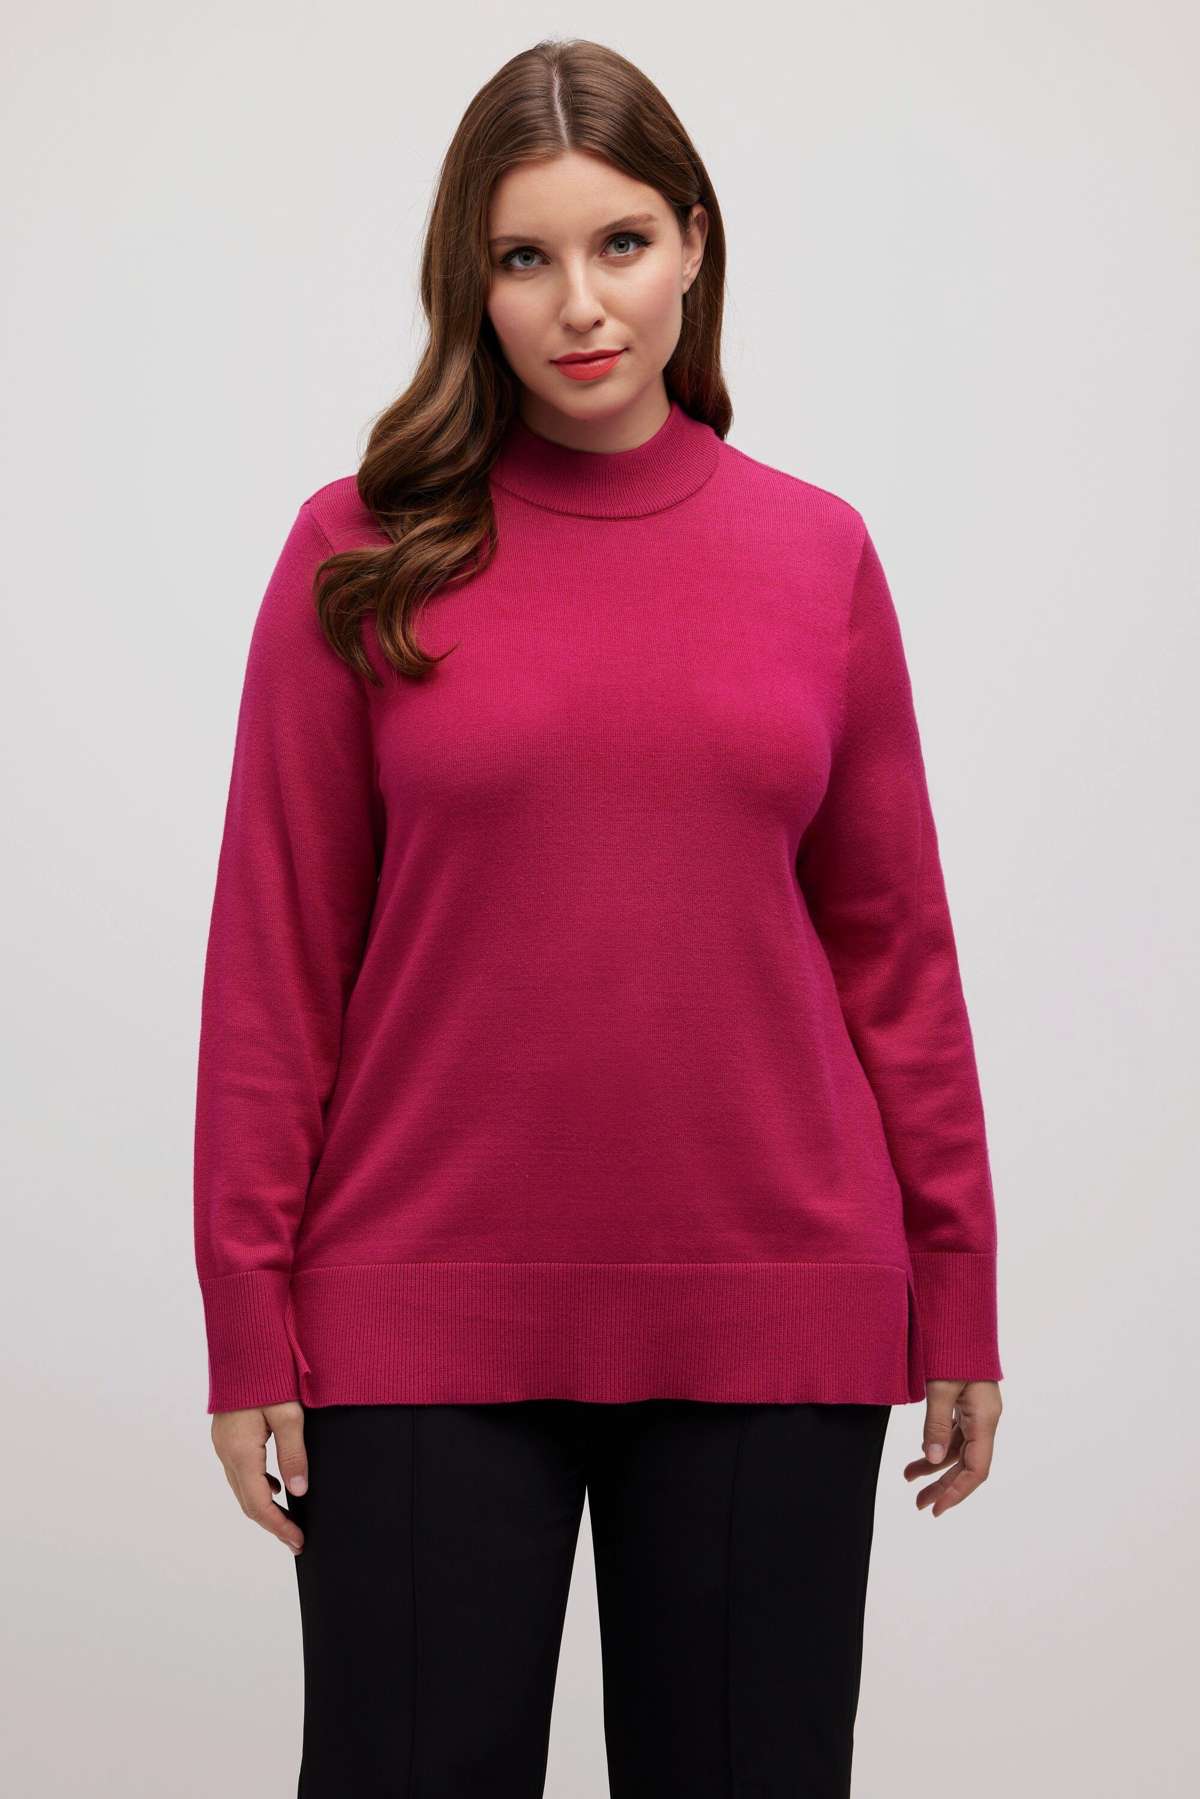 Вязаный пуловер с воротником стойкой и длинными рукавами мягкой тонкой вязки.